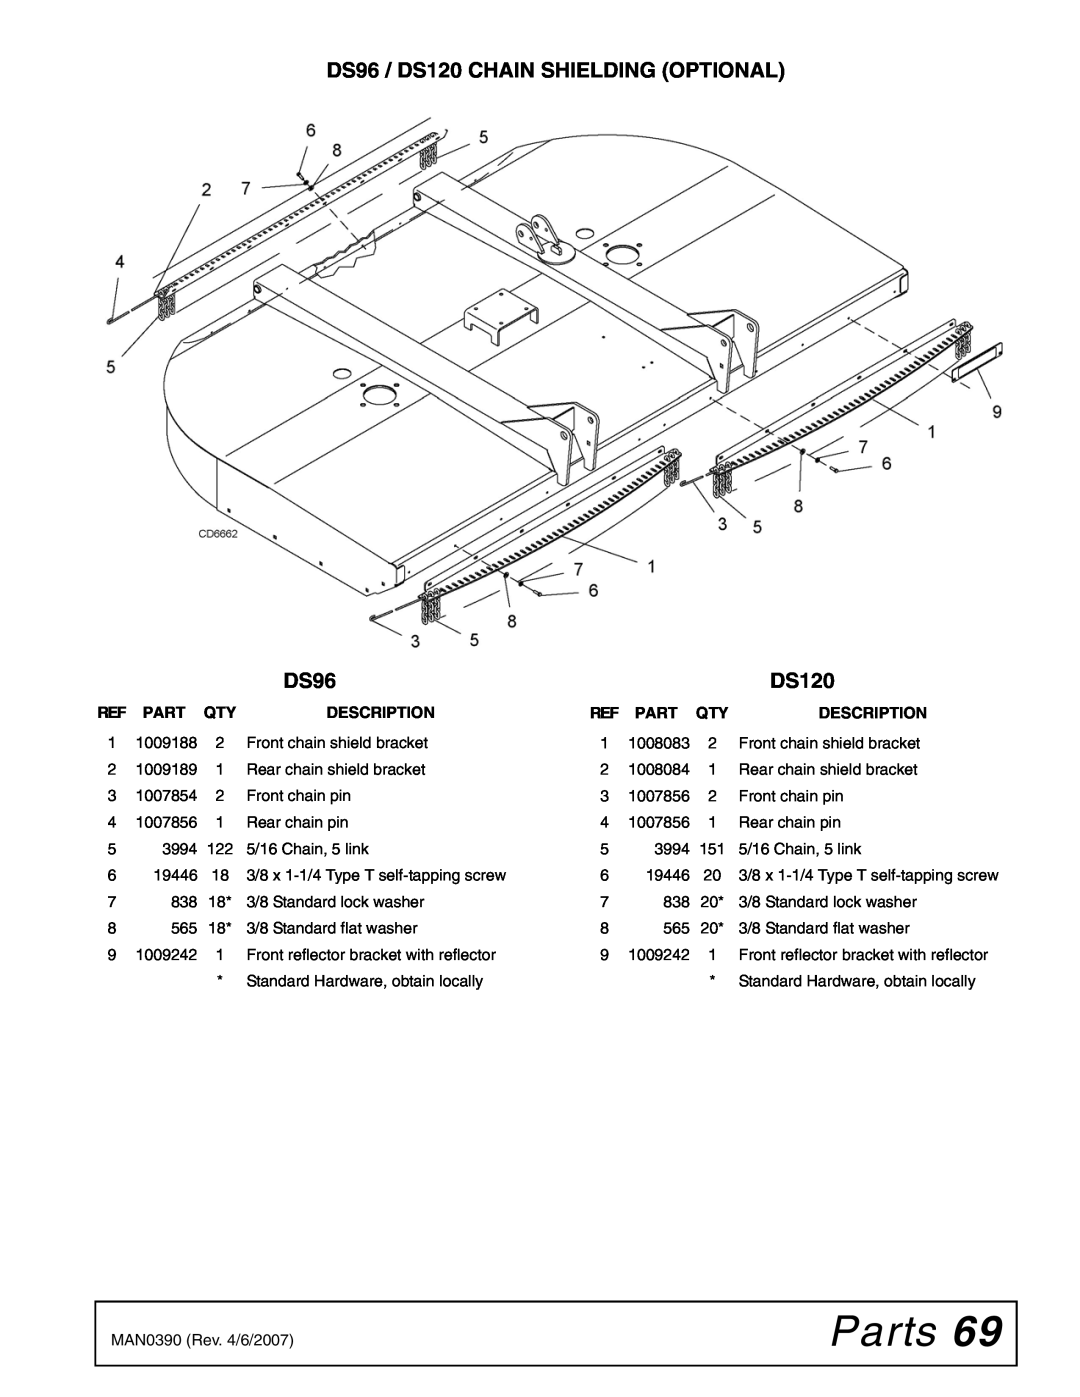 Woods Equipment manual Parts, DS96 / DS120 CHAIN SHIELDING OPTIONAL, Description 